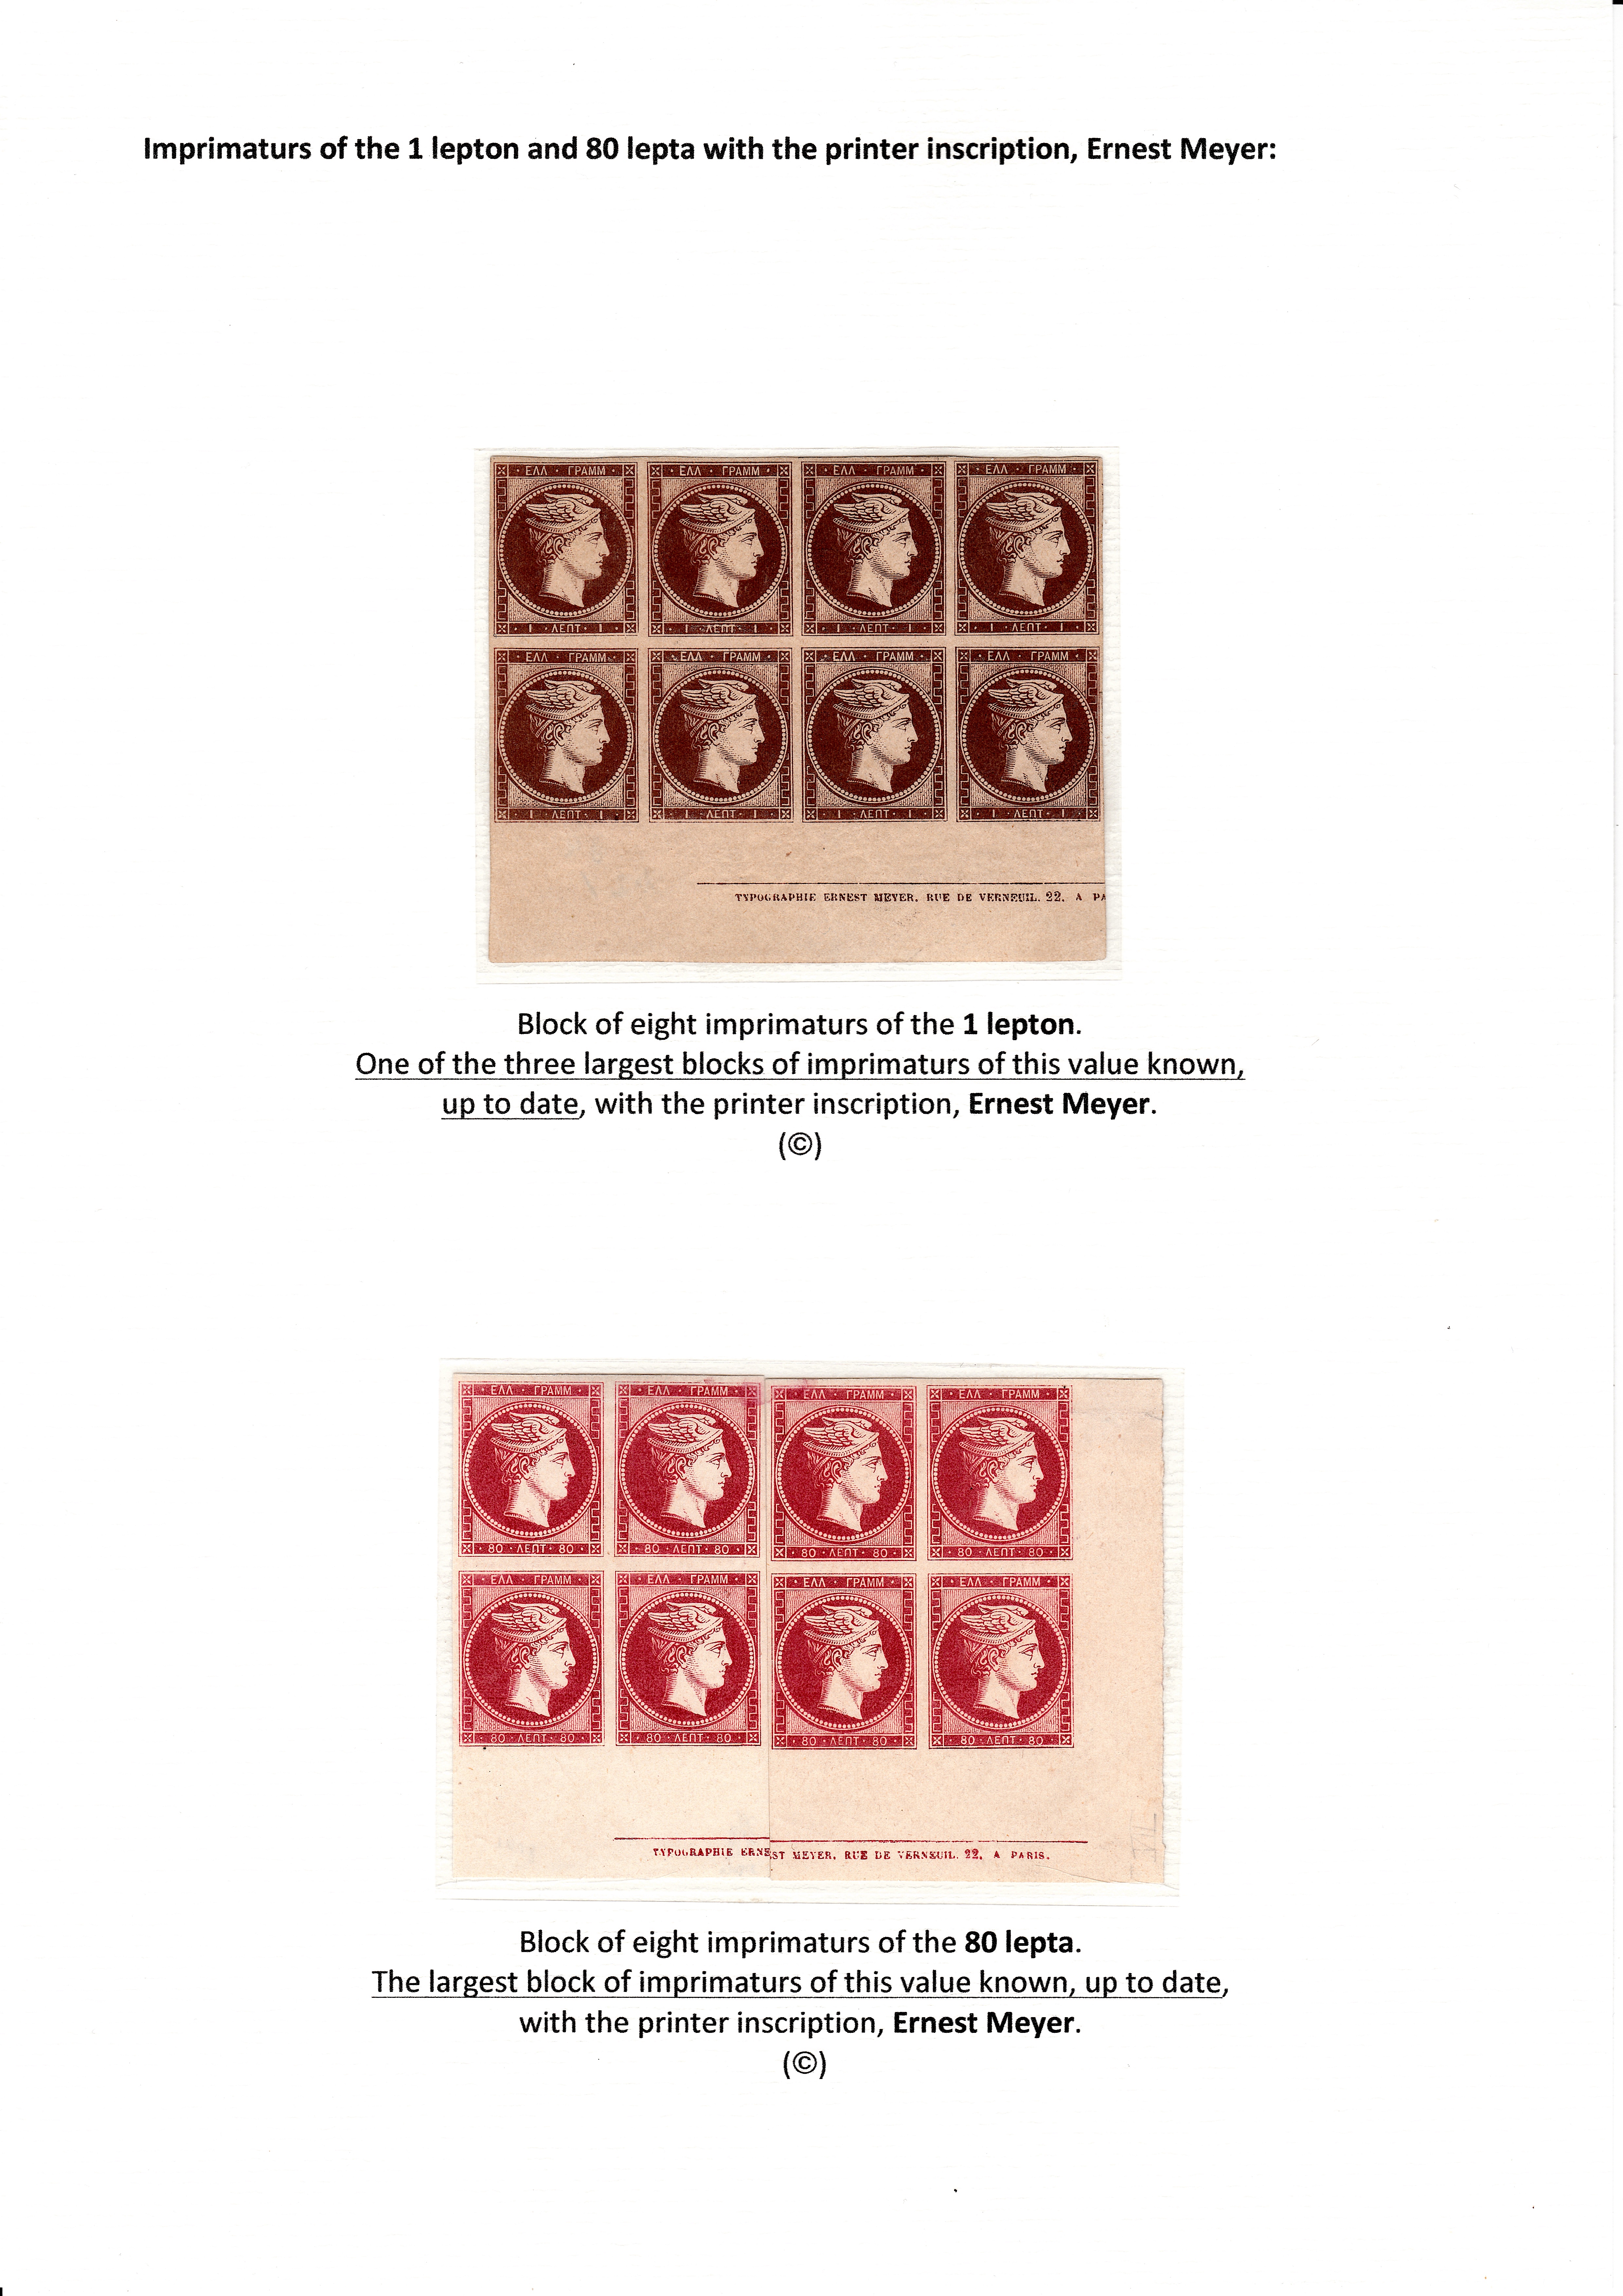 La fabrication et l���utilisation postale des tirages de Paris de la grosse t��te d���Herm��s de Gr��ce��� p. 23